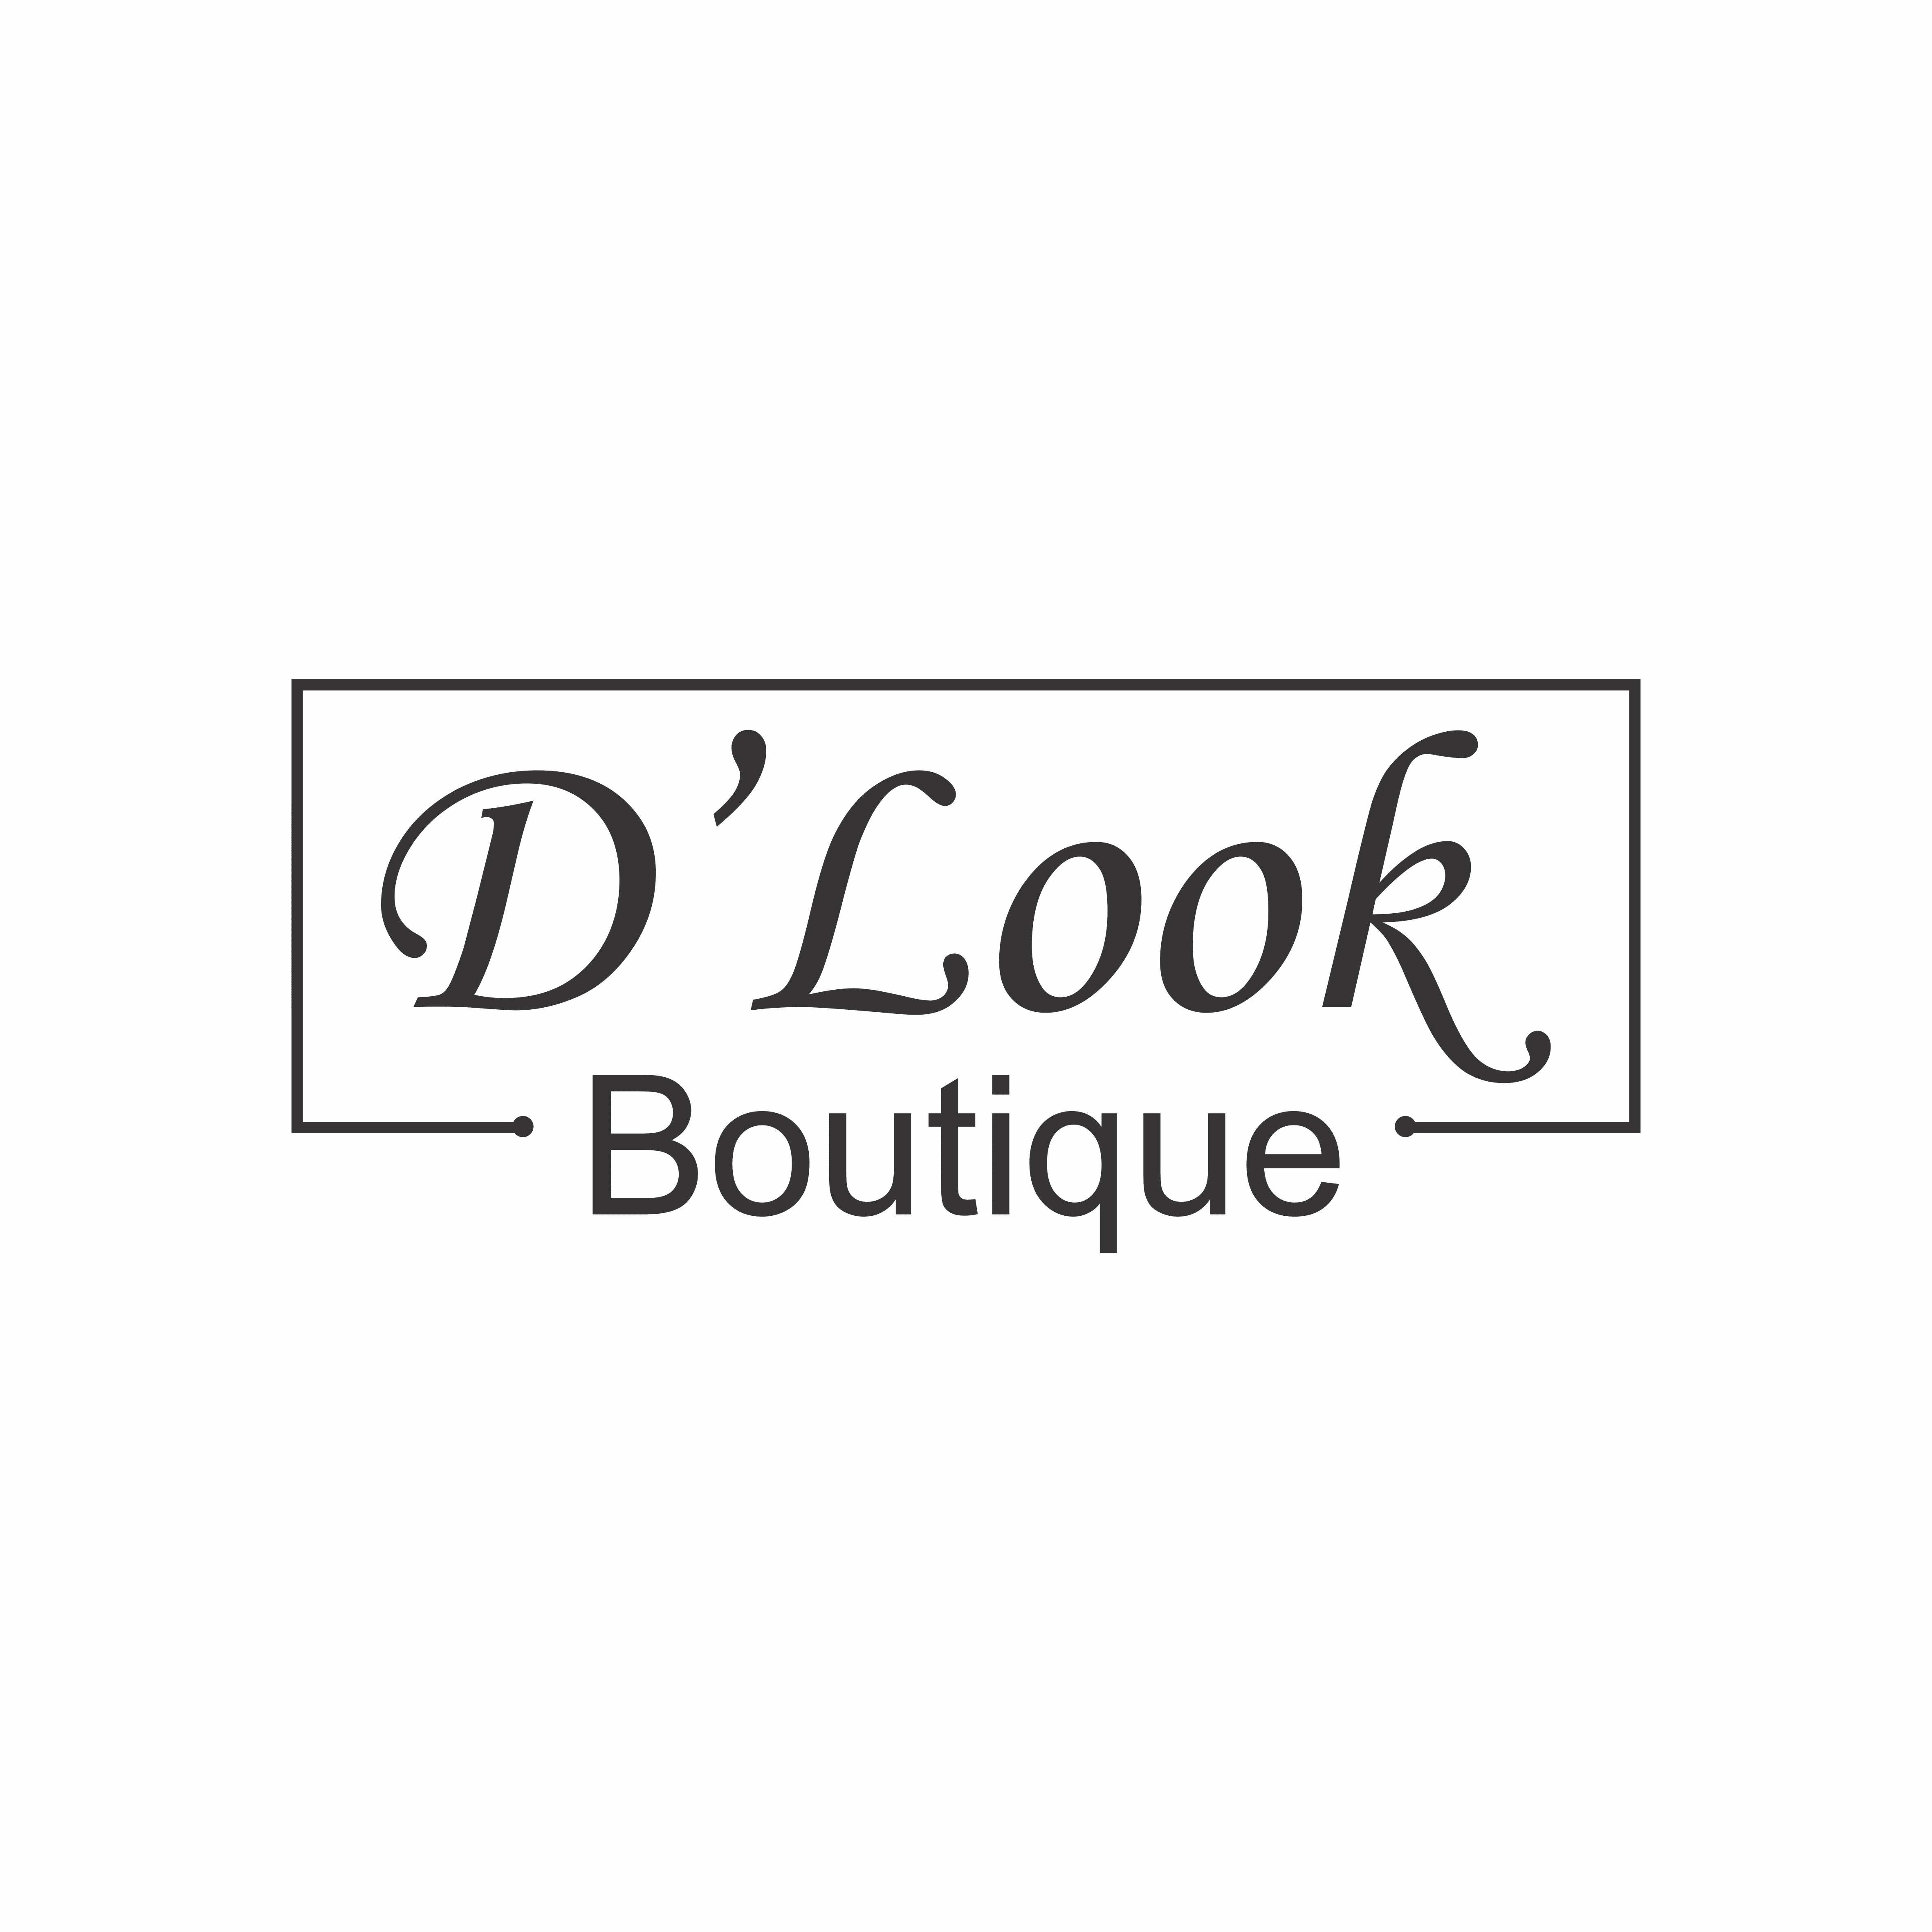 D'Look Boutique